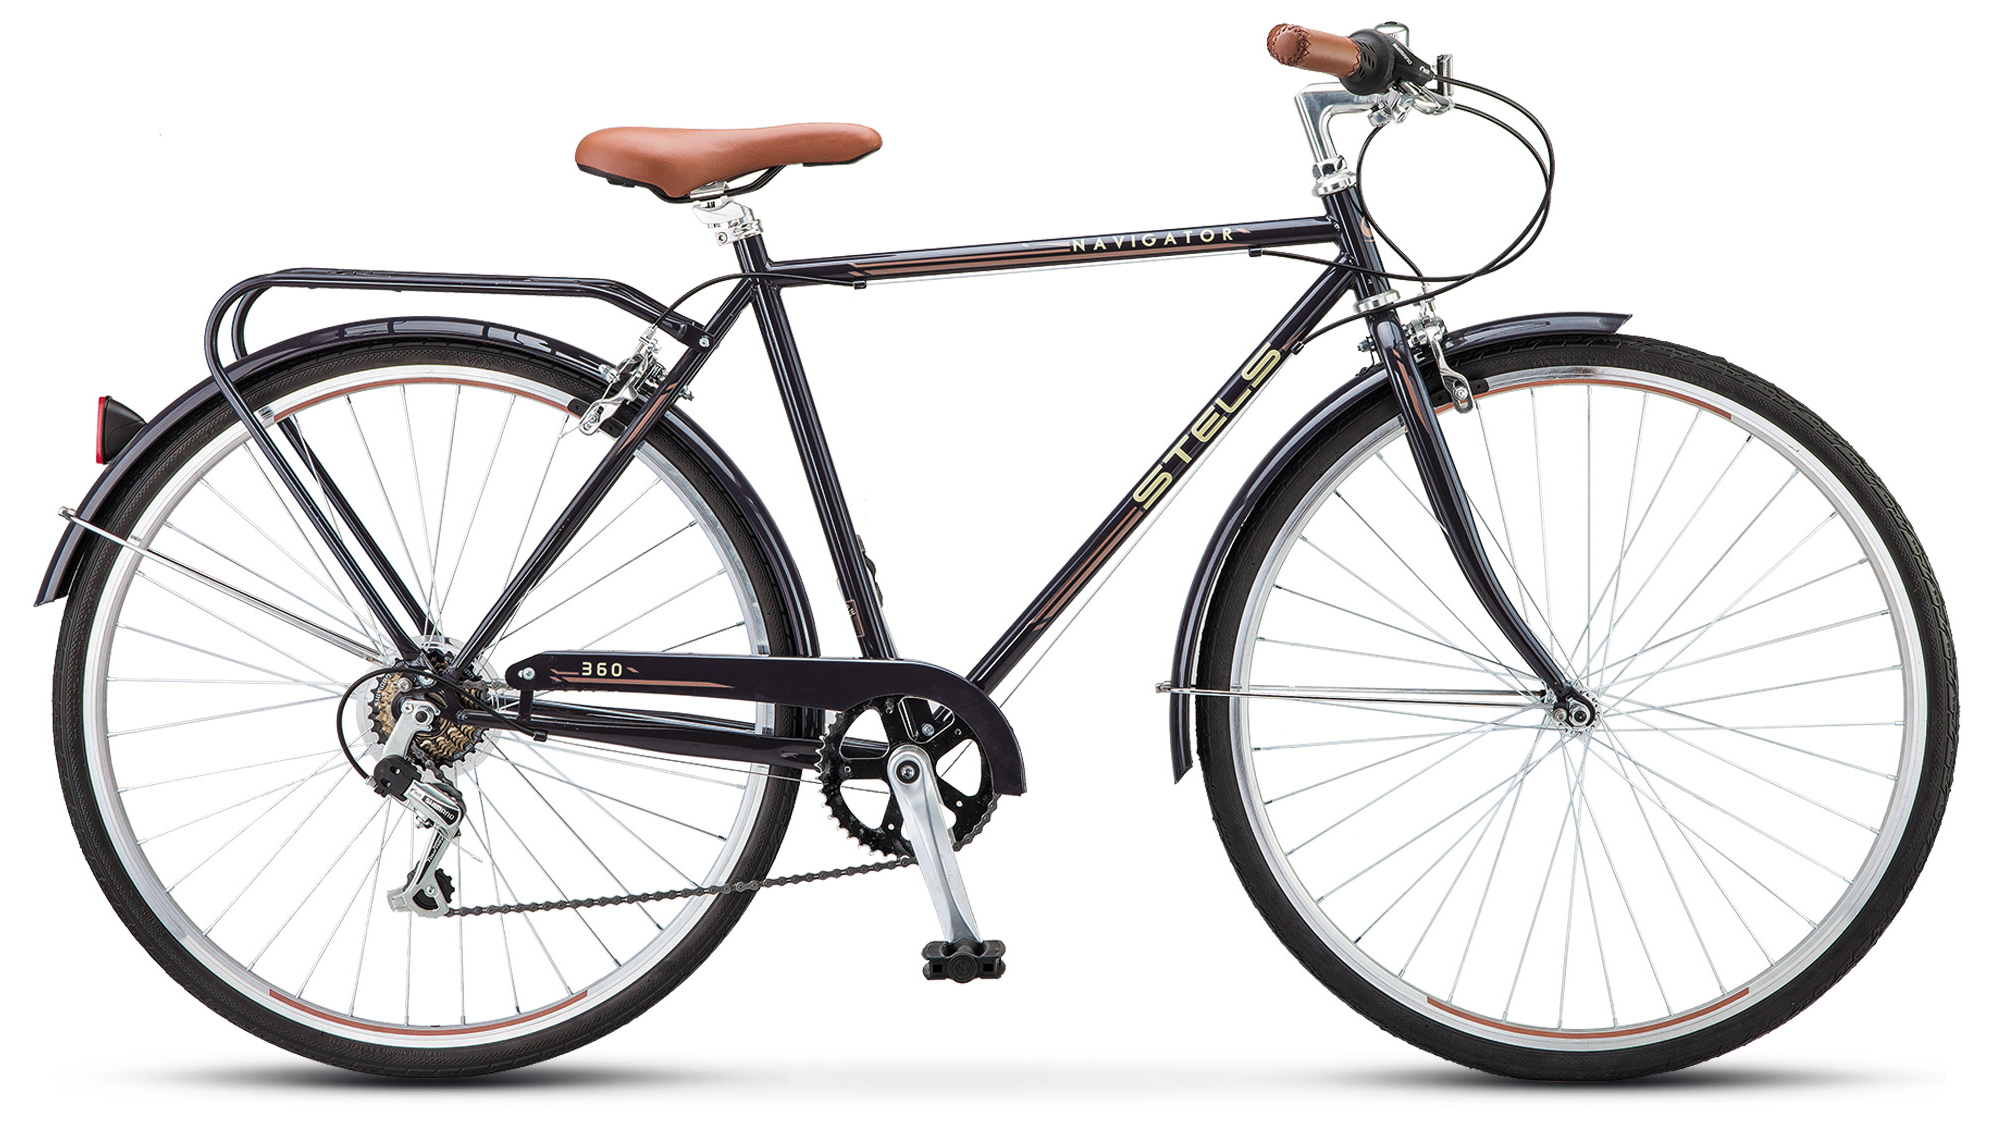  Отзывы о Городском велосипеде Stels Navigator 360 Gent 28 (V010) 2019